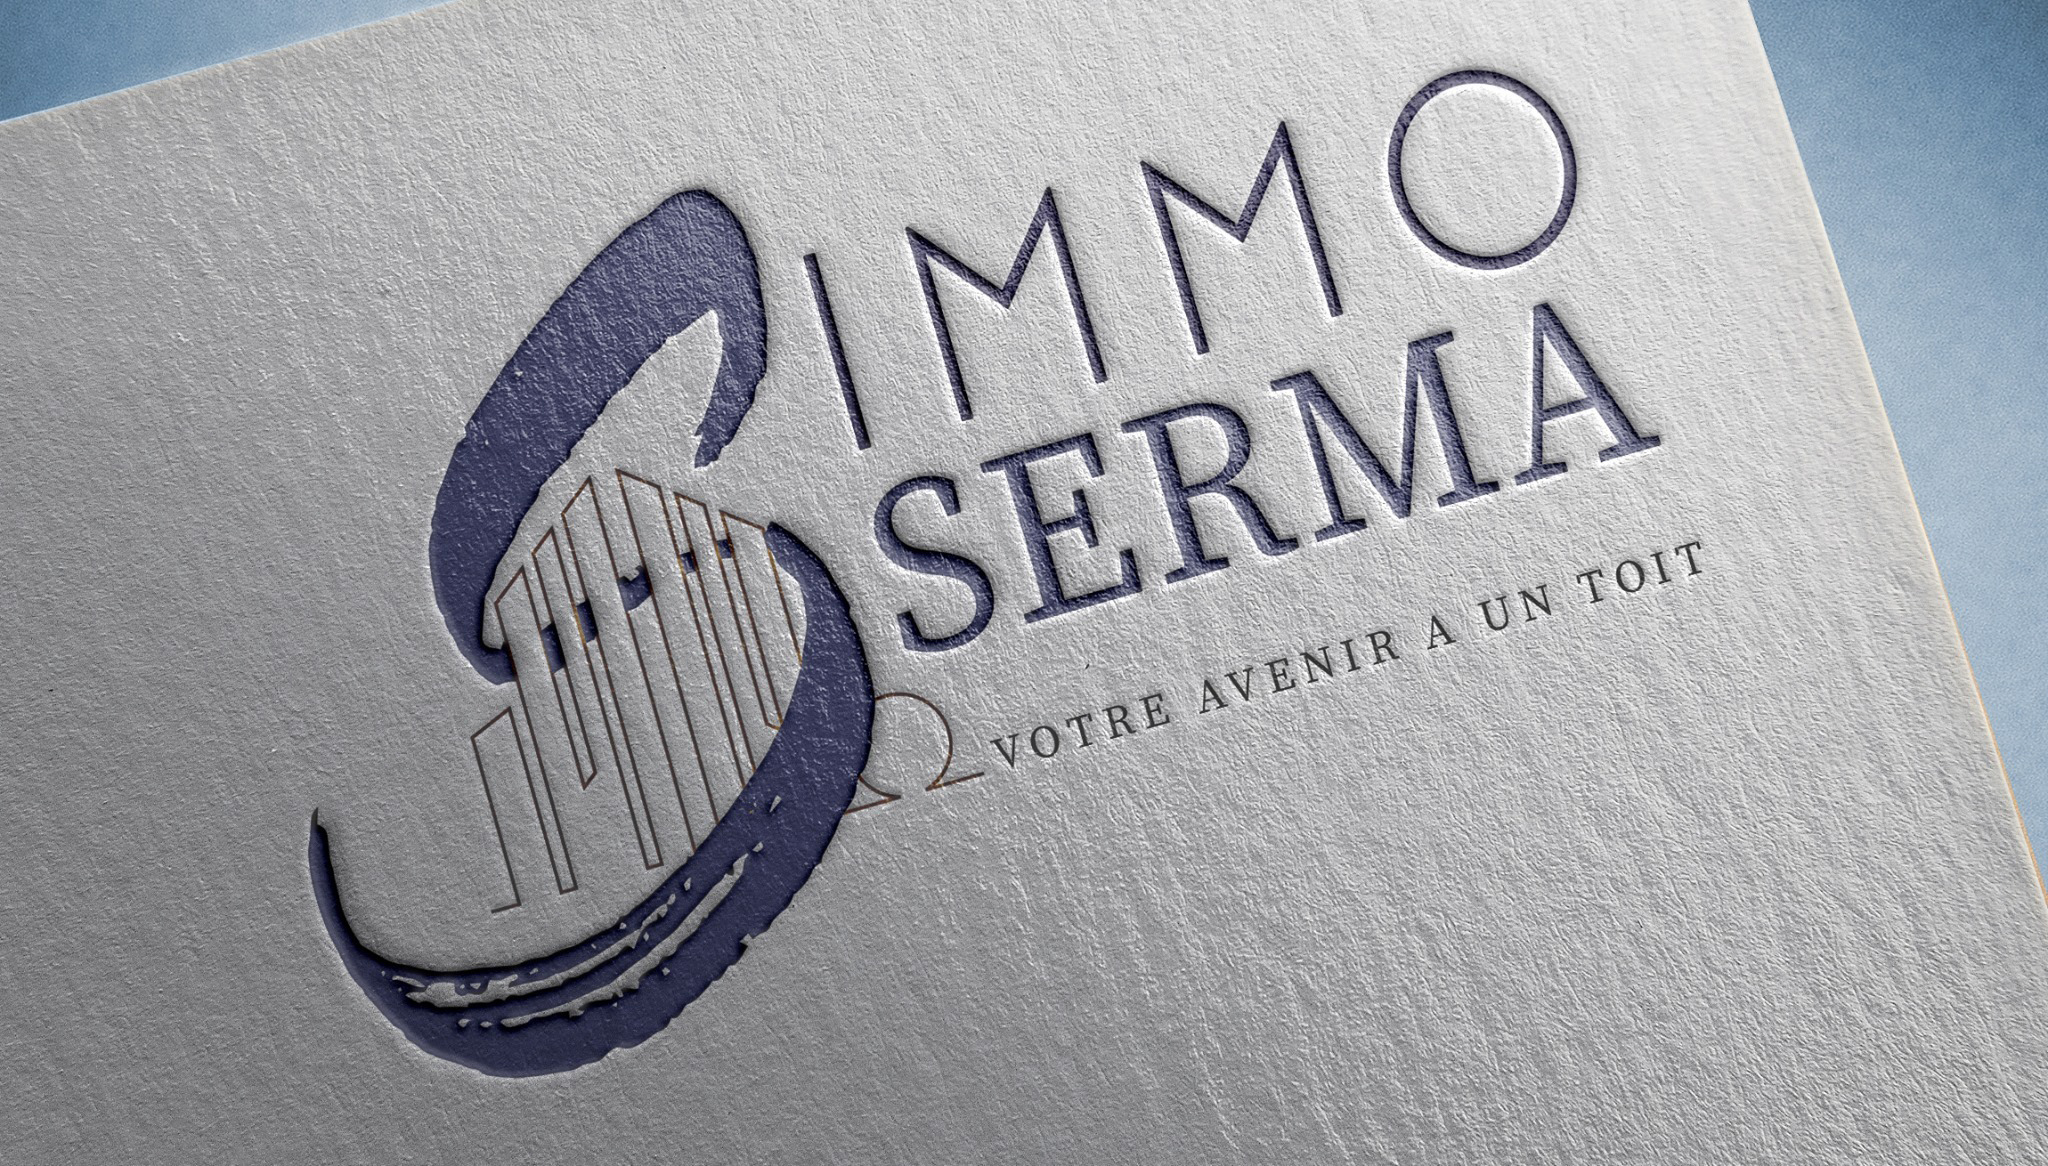 Création du logo Immo Serma